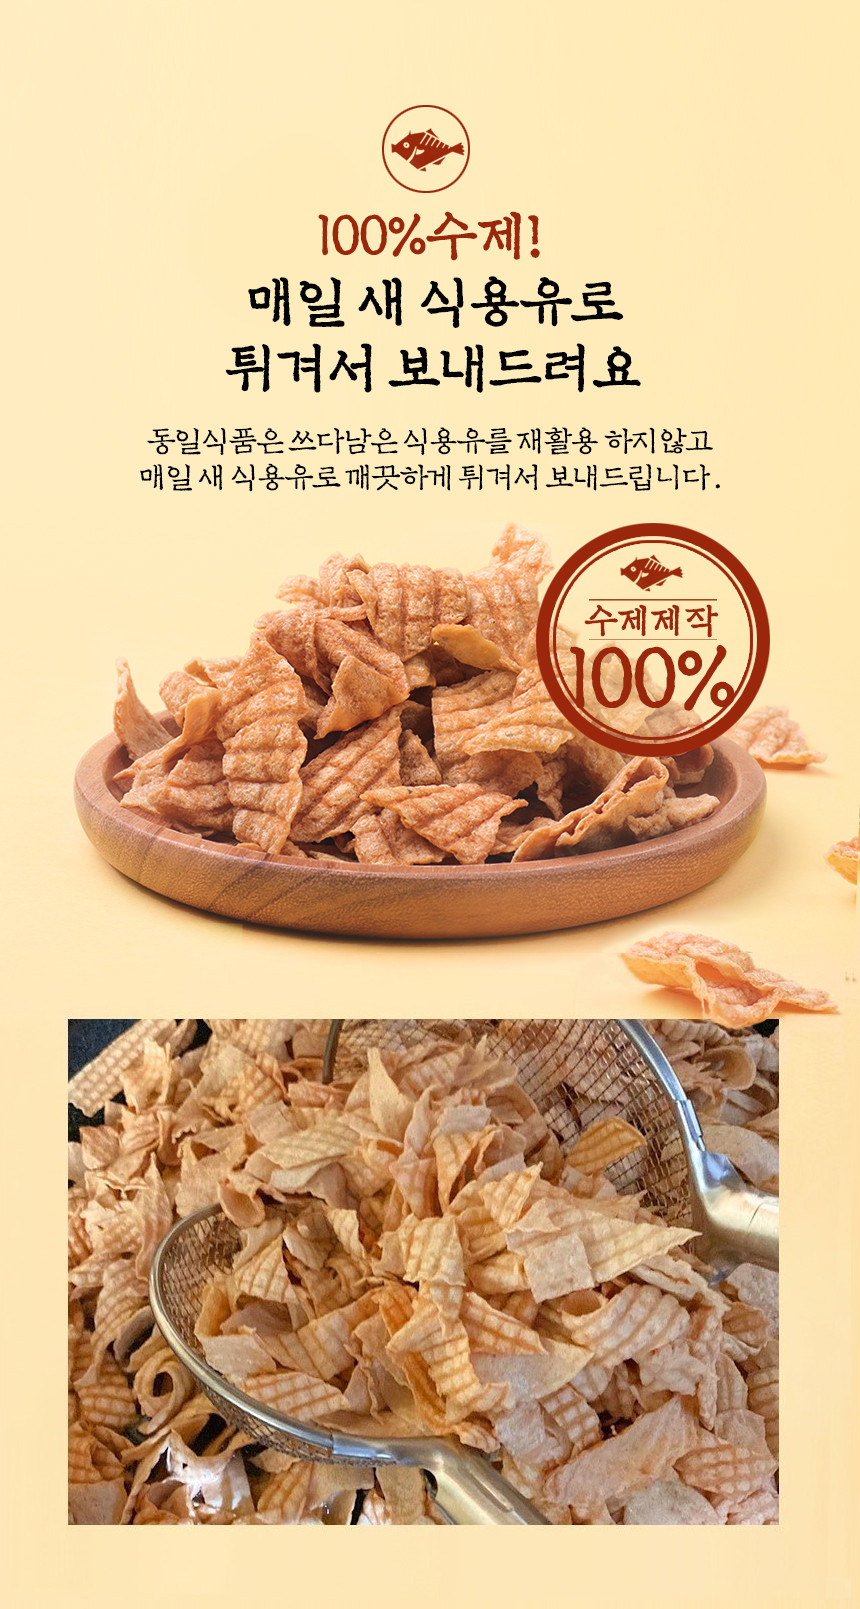 韓國食品-Dong-ilfood Dried Fish Fillet Snack 90g